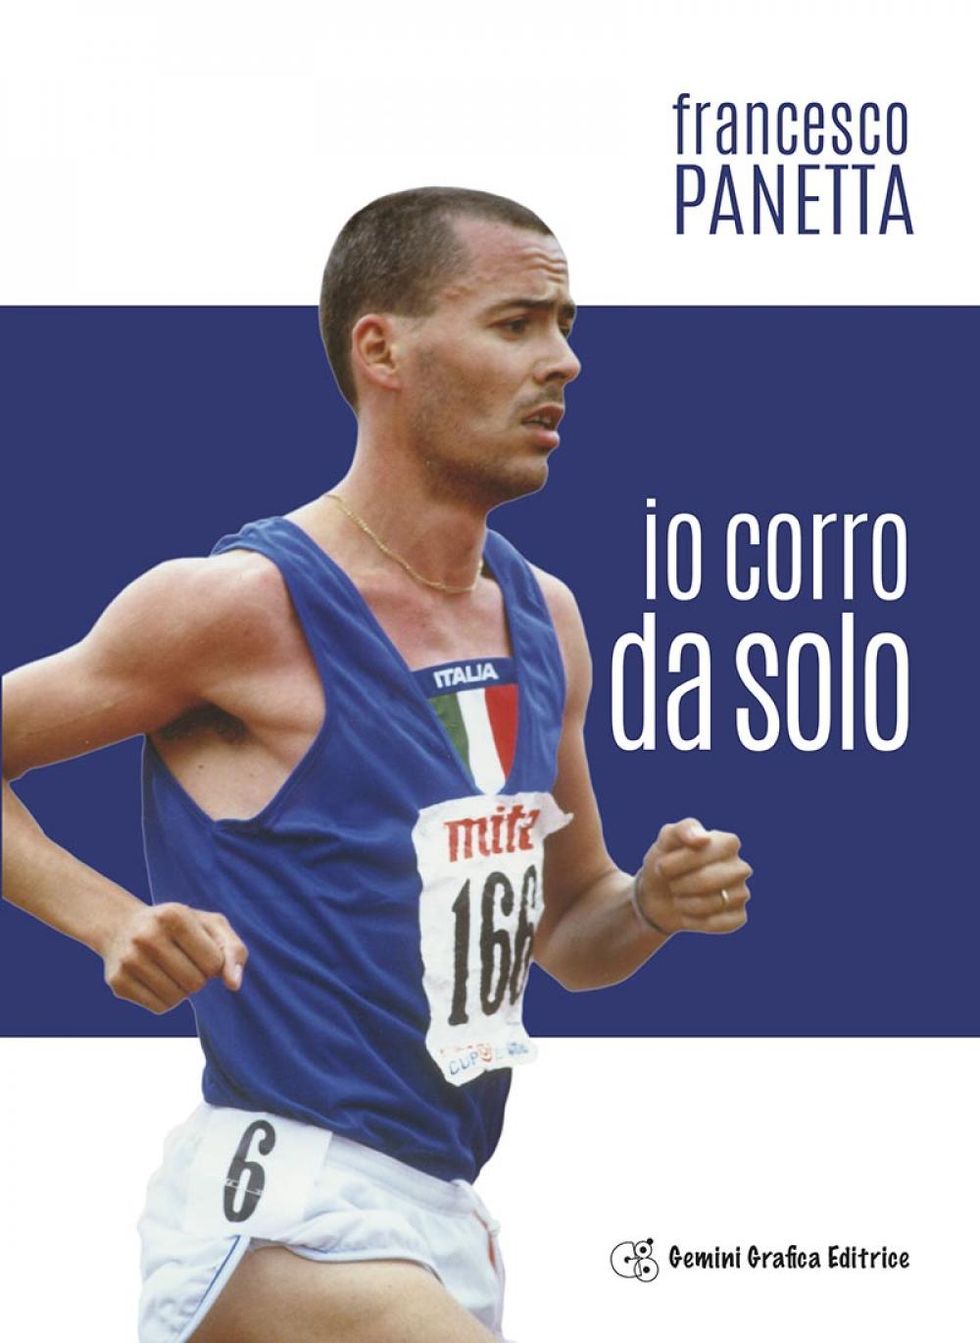 La copertina di “Io corro da solo” l’autobiografia di Francesco Panetta